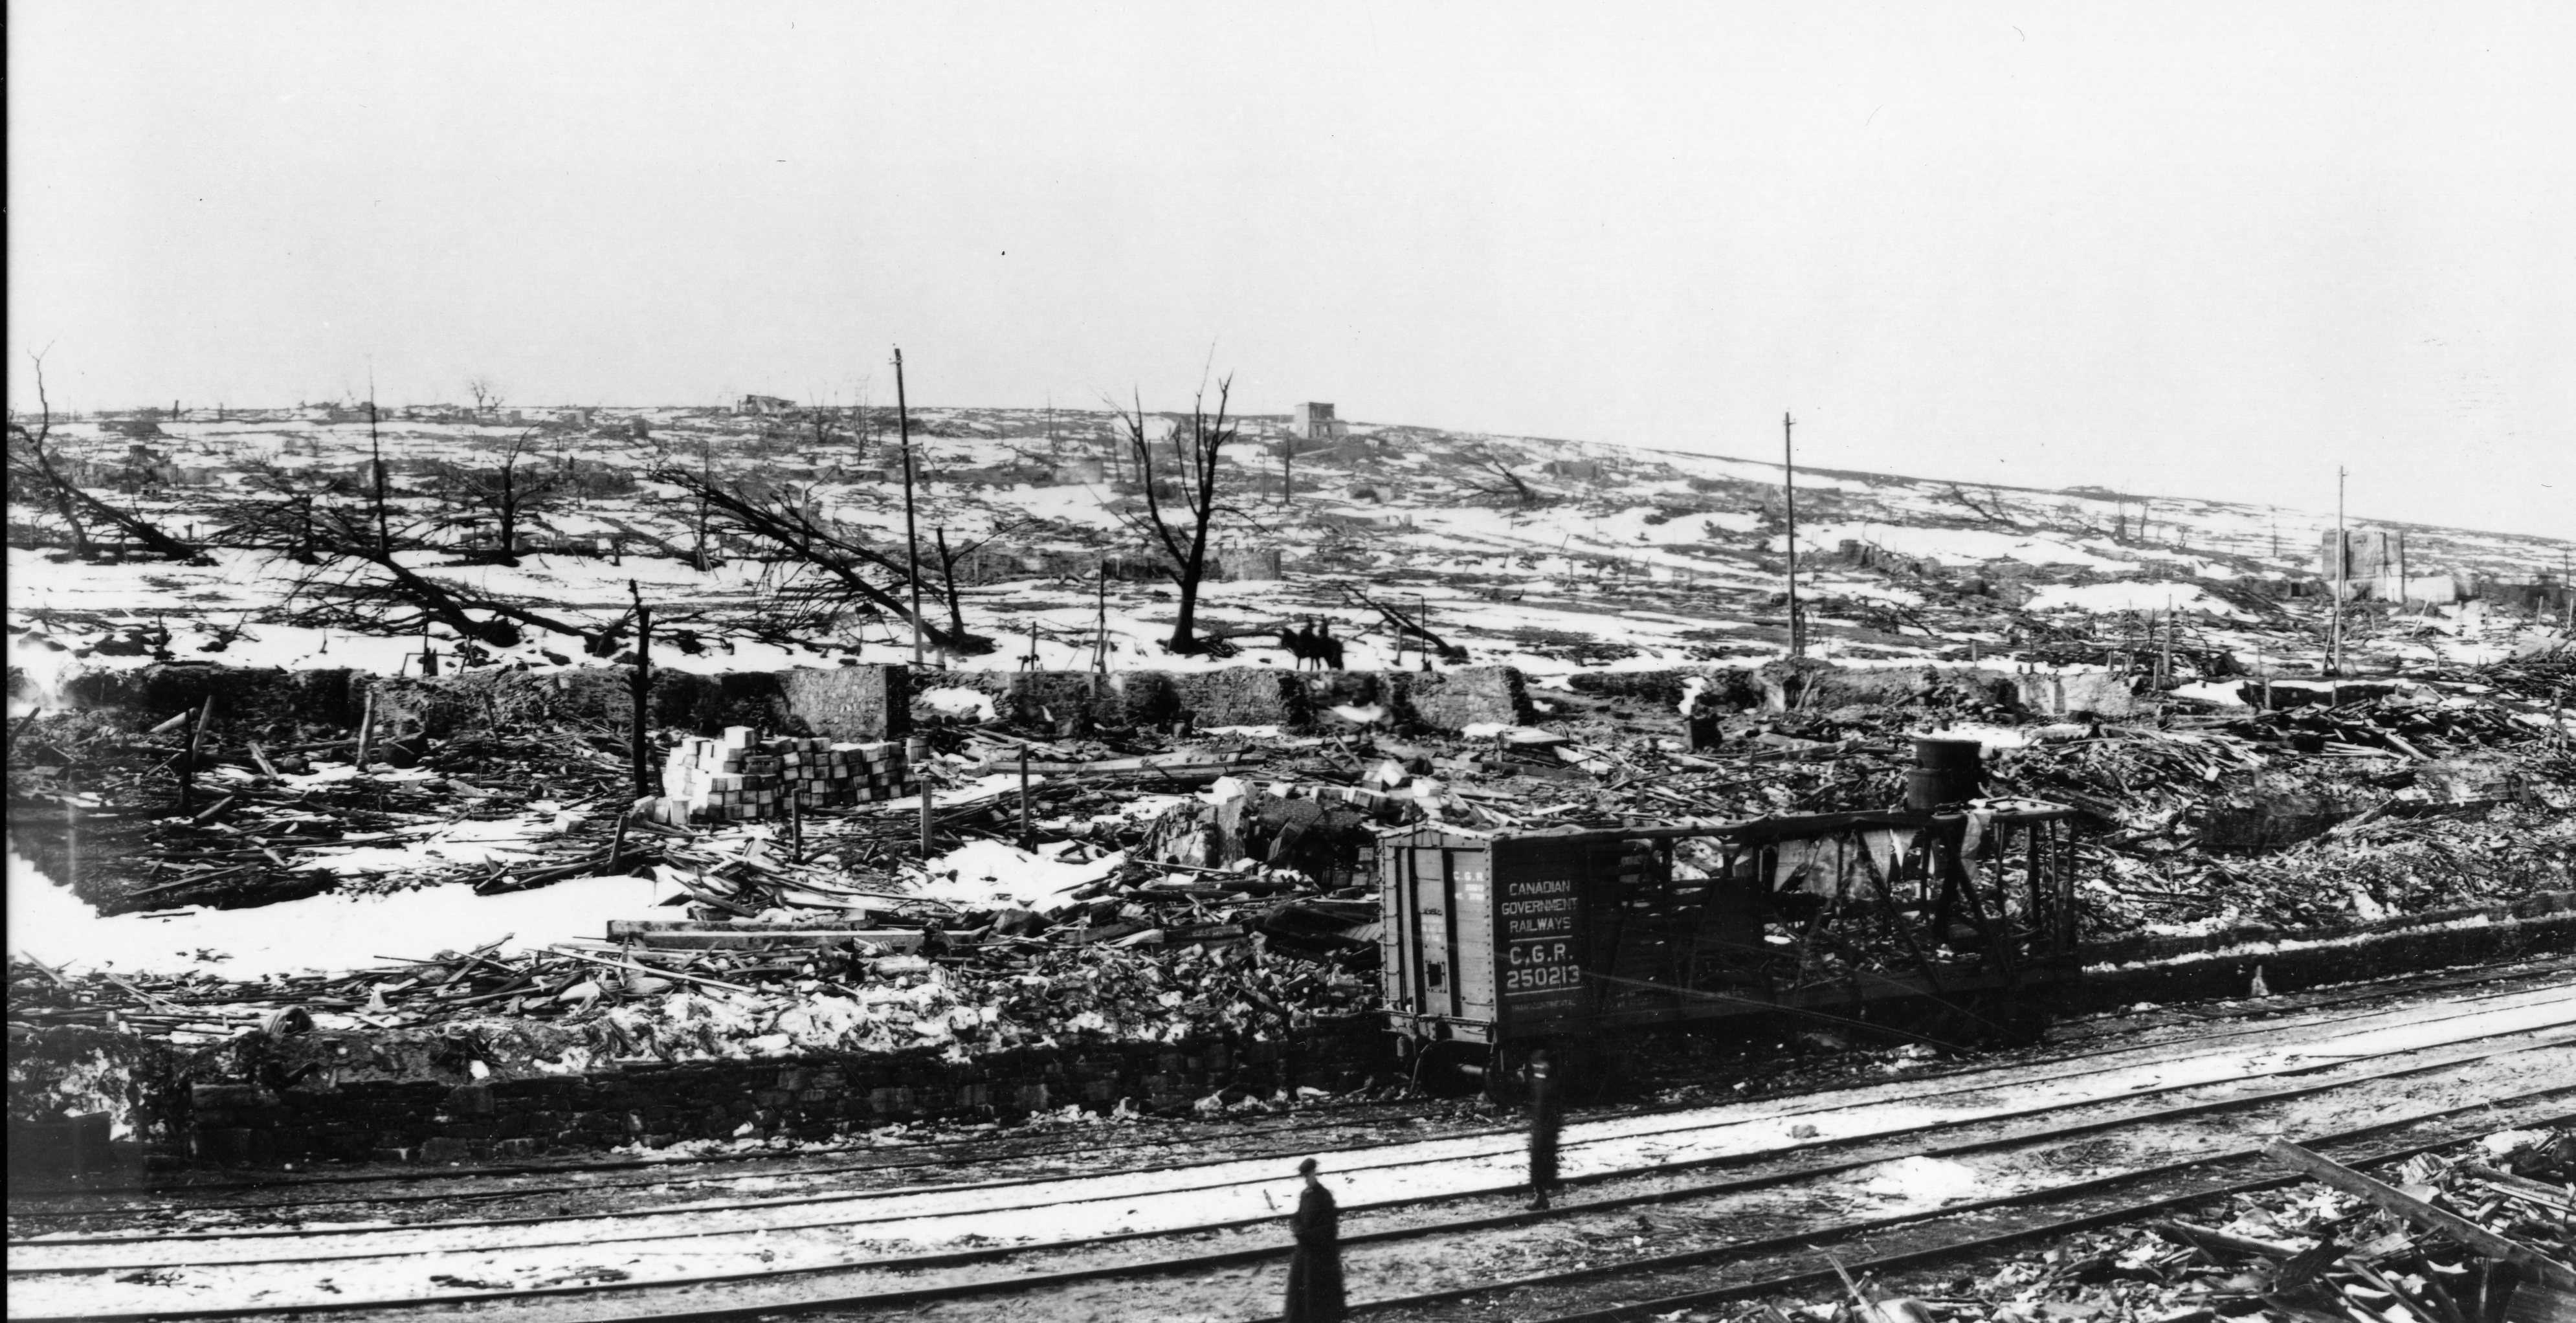 Photographie en noir et blanc – La voie ferrée au premier plan. La neige, les décombres, des arbres calcinés et des ruines de bâtiments composent le paysage. Un détail notable : un véhicule ferroviaire complètement détruit.